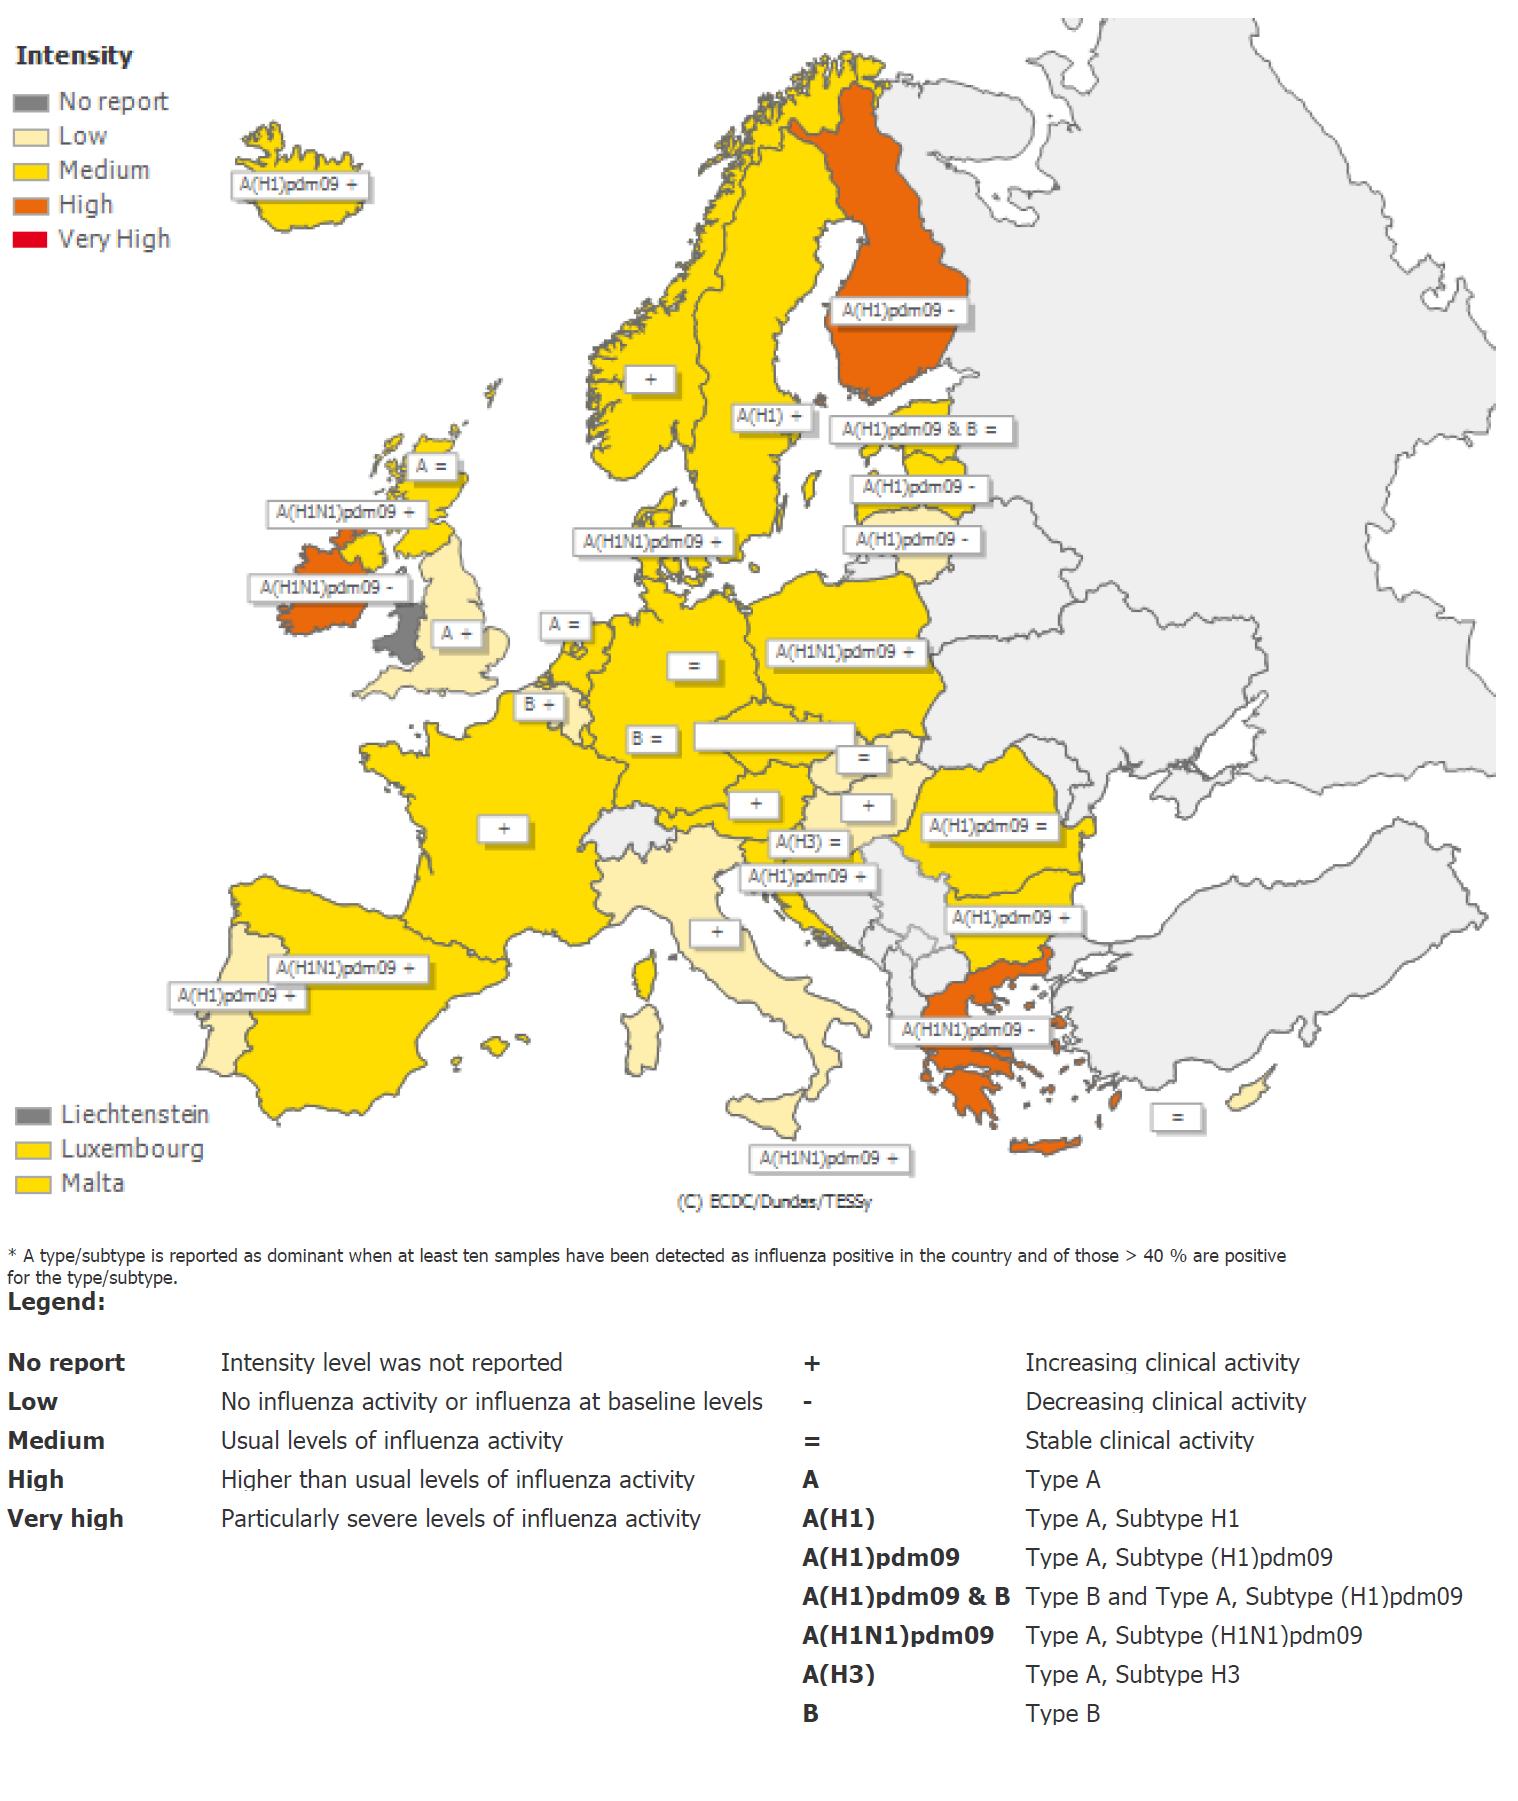 Instituto Nacional de Saúde Doutor Ricardo Jorge, I.P. Situação internacional: Europa Figura 14 Intensidade da atividade gripal na Europa, semana 6/216.